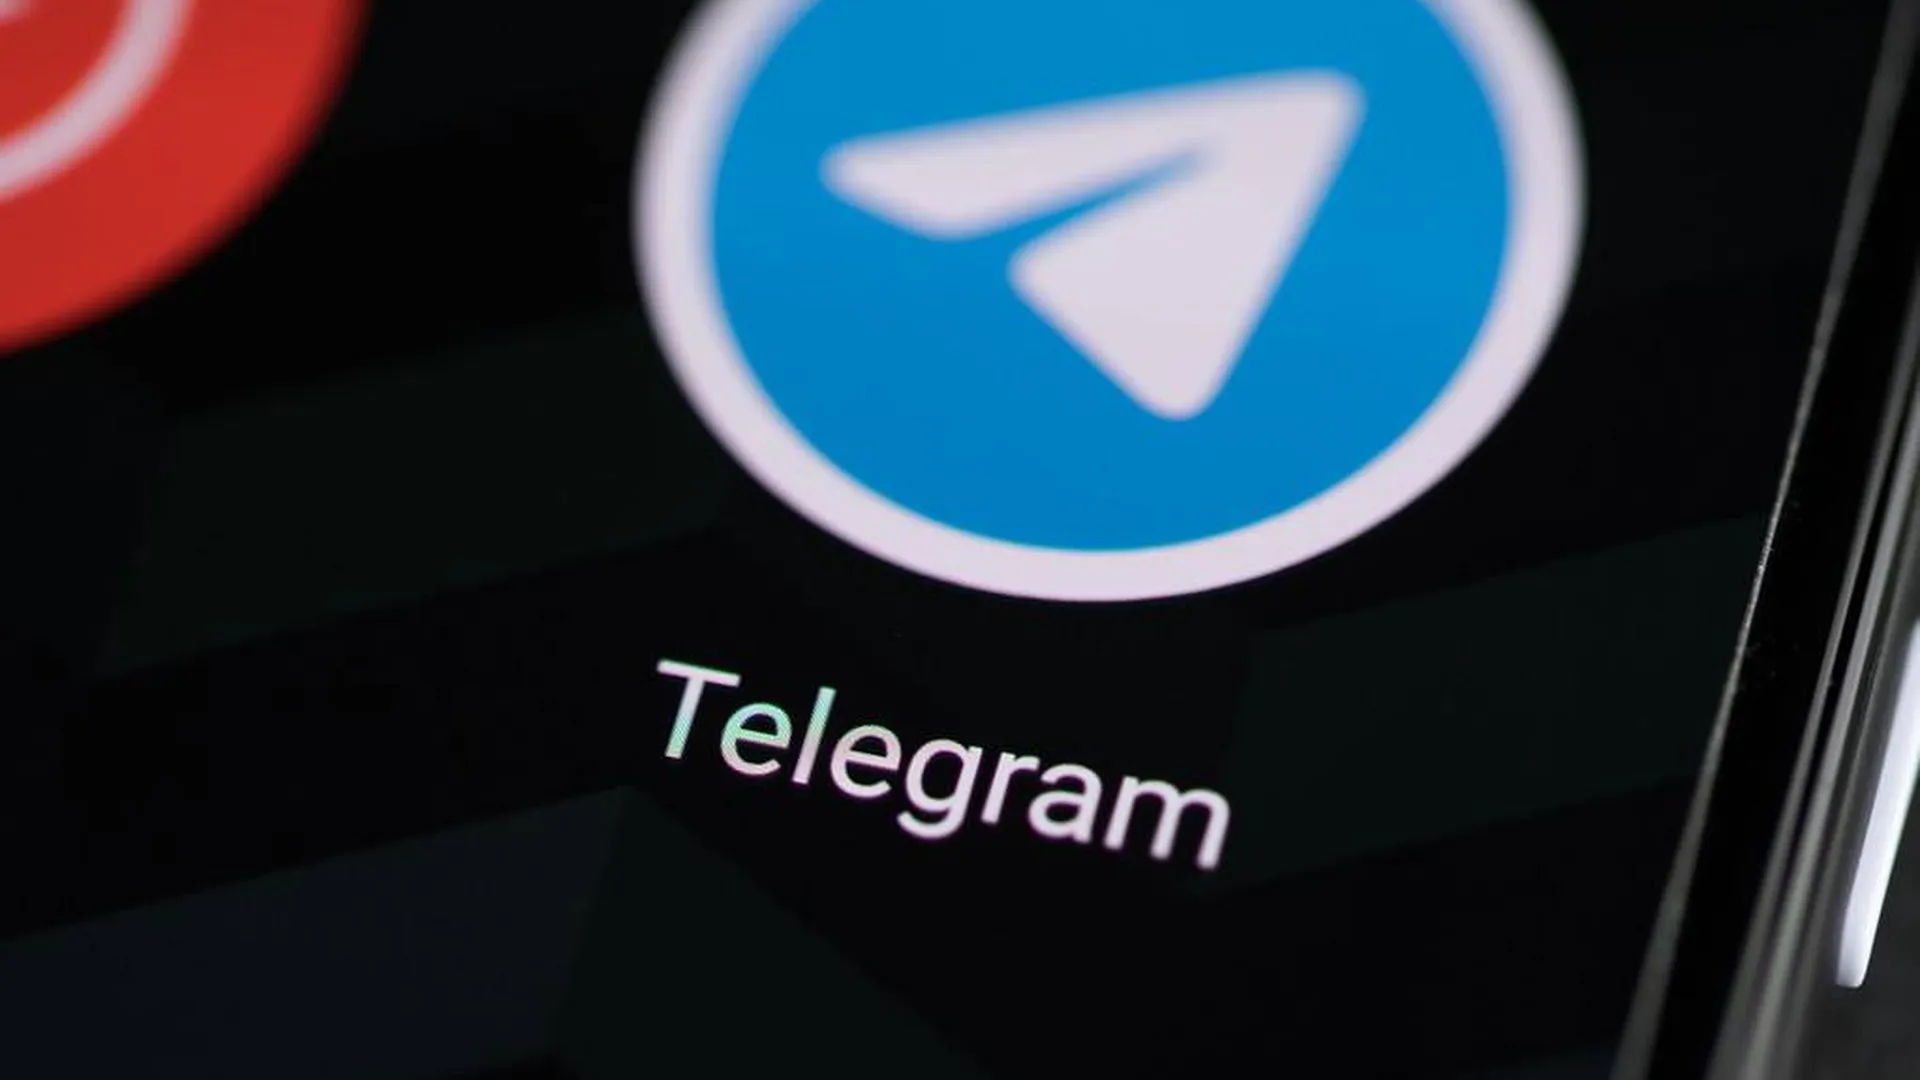 Большие новости 31 января. Два расследования против Telegram, апартаменты под снос, еще одни ипотечные каникулы